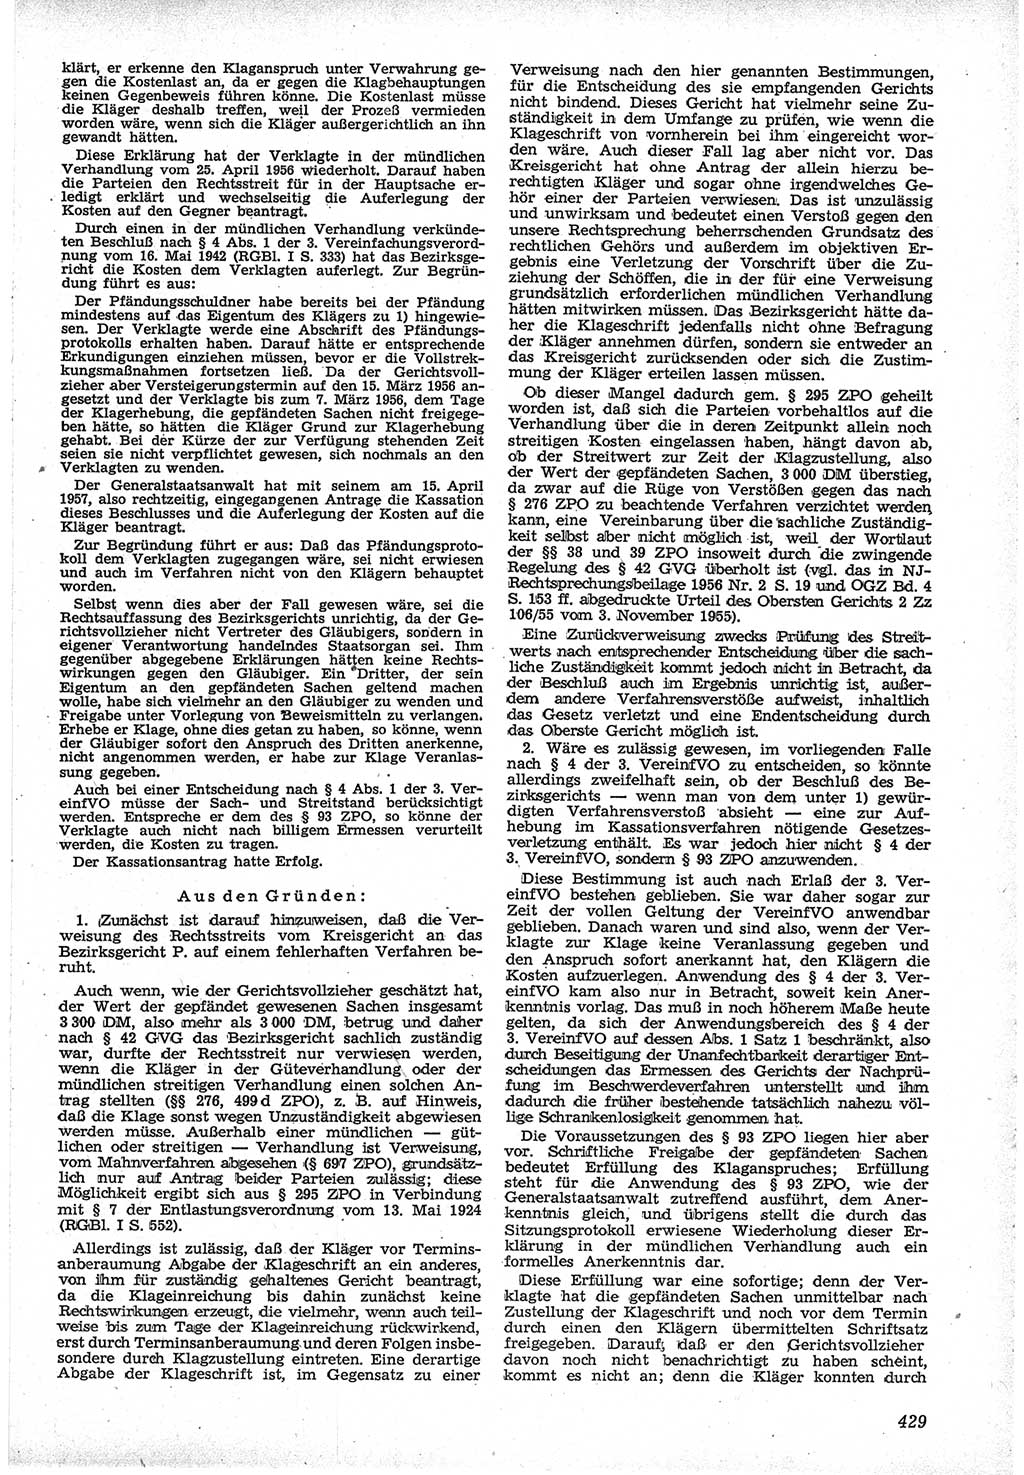 Neue Justiz (NJ), Zeitschrift für Recht und Rechtswissenschaft [Deutsche Demokratische Republik (DDR)], 12. Jahrgang 1958, Seite 429 (NJ DDR 1958, S. 429)